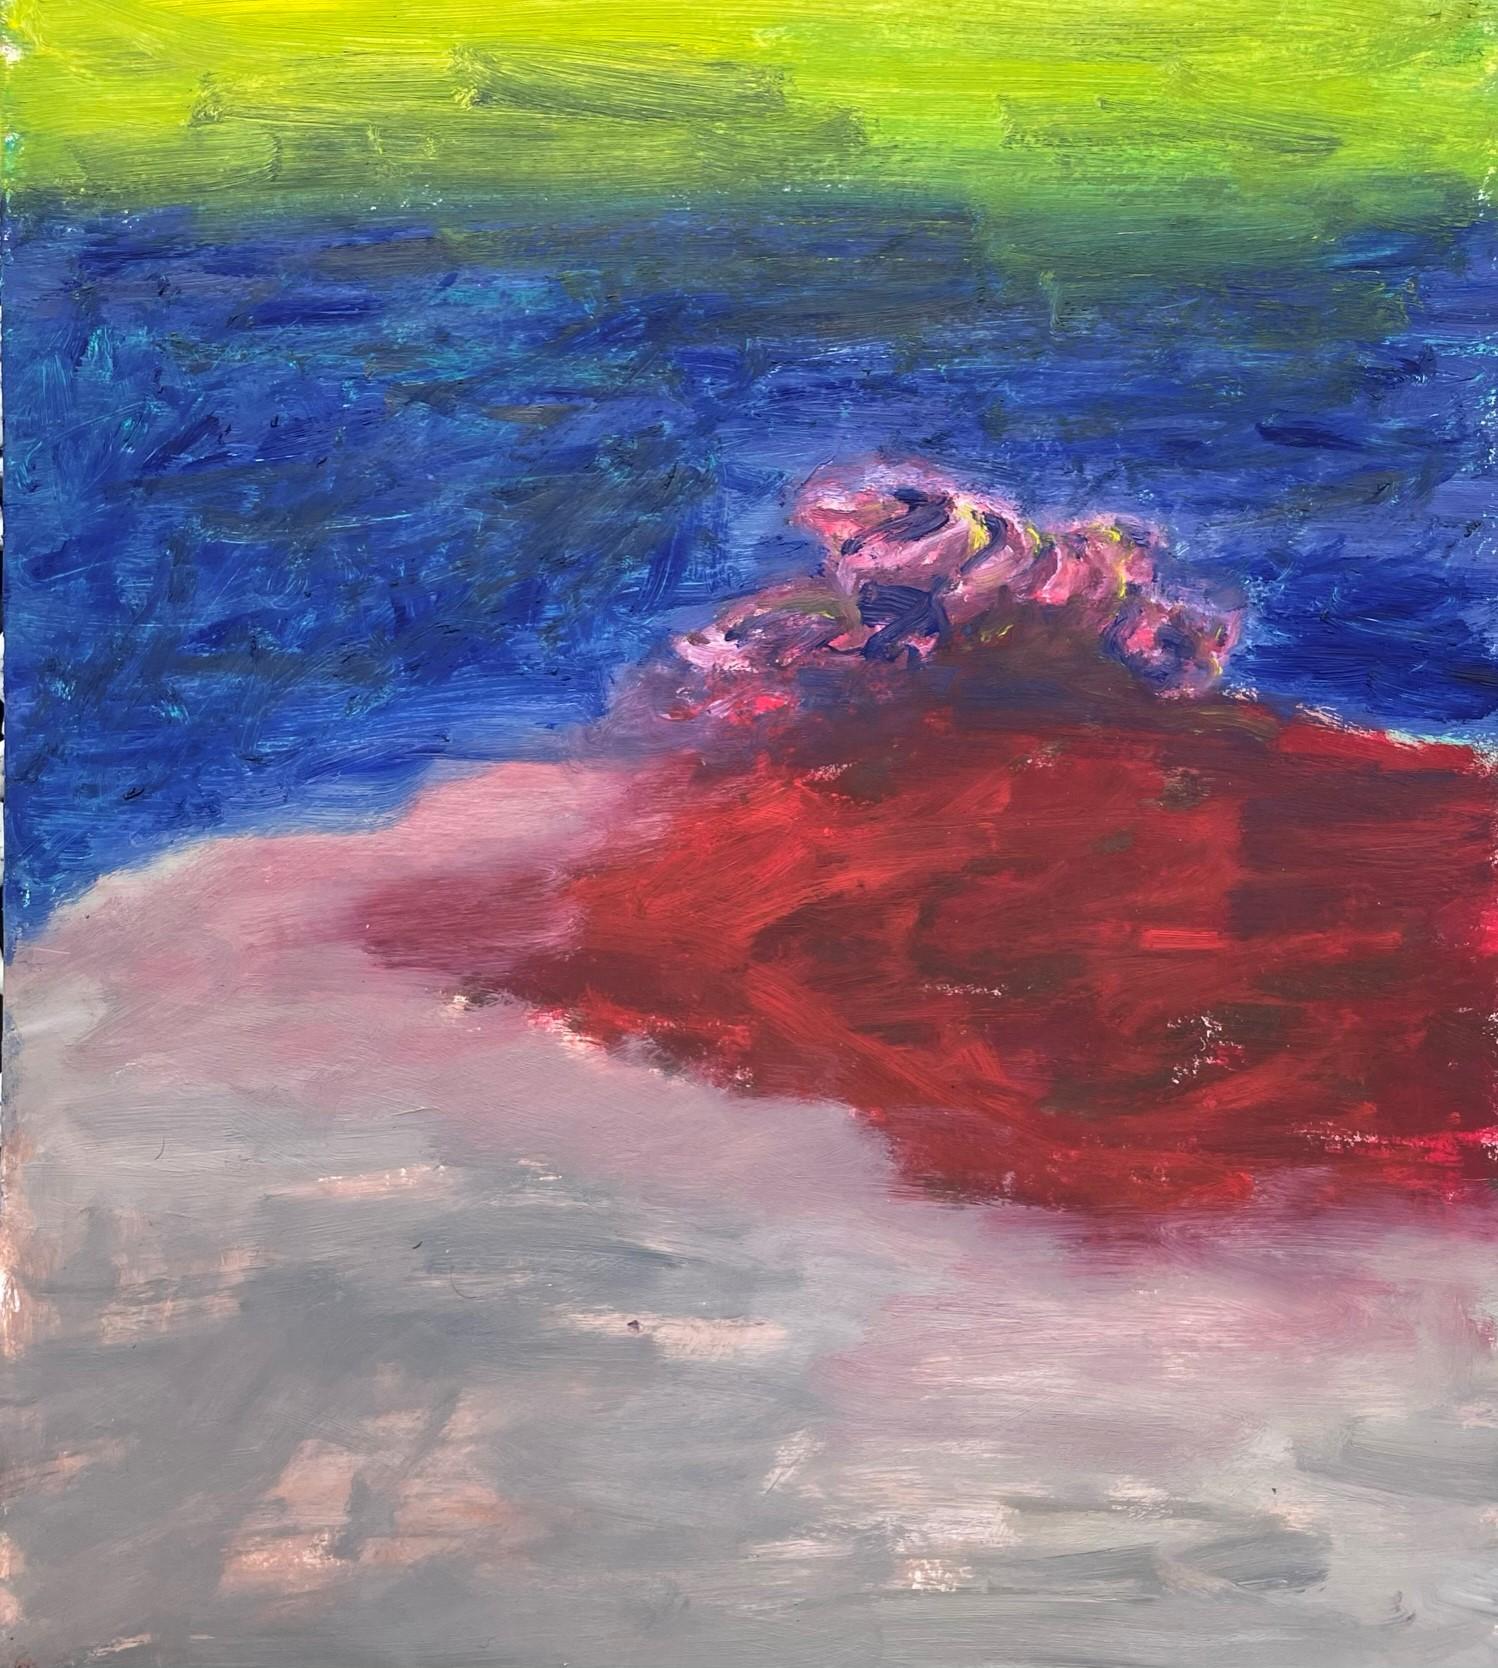 Remains (Body in the Field 6)  Zeitgenssisch, grn, blau, rot, 21. Jahrhundert (Abstrakter Expressionismus), Art, von Zsolt Berszán